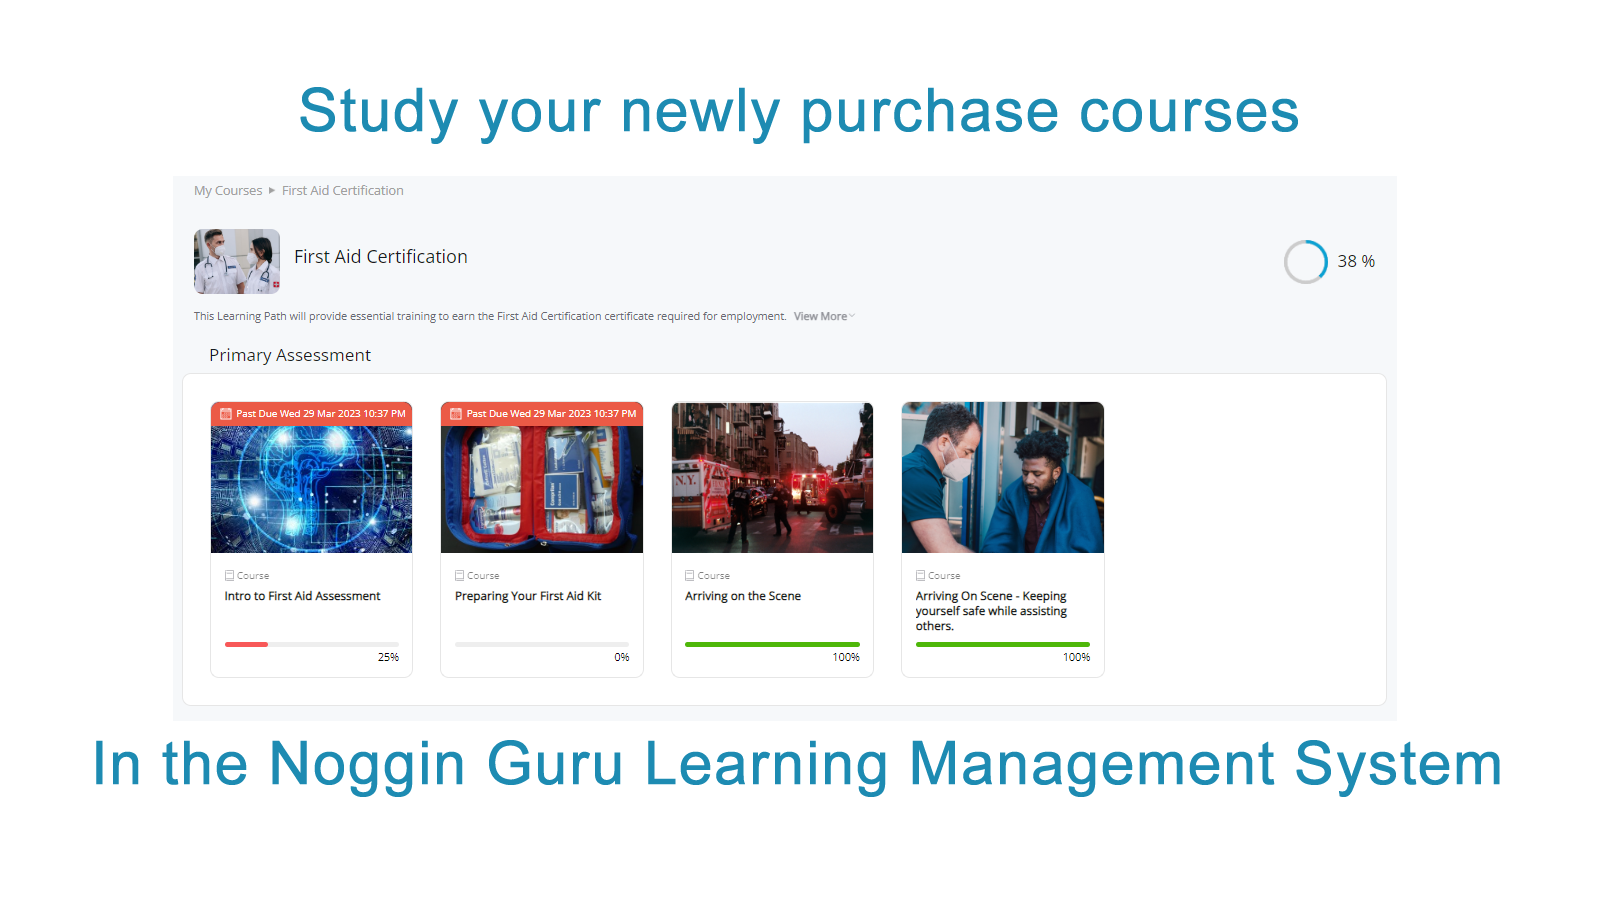 Studeer uw nieuw aangekochte cursussen in de Noggin Guru LMS